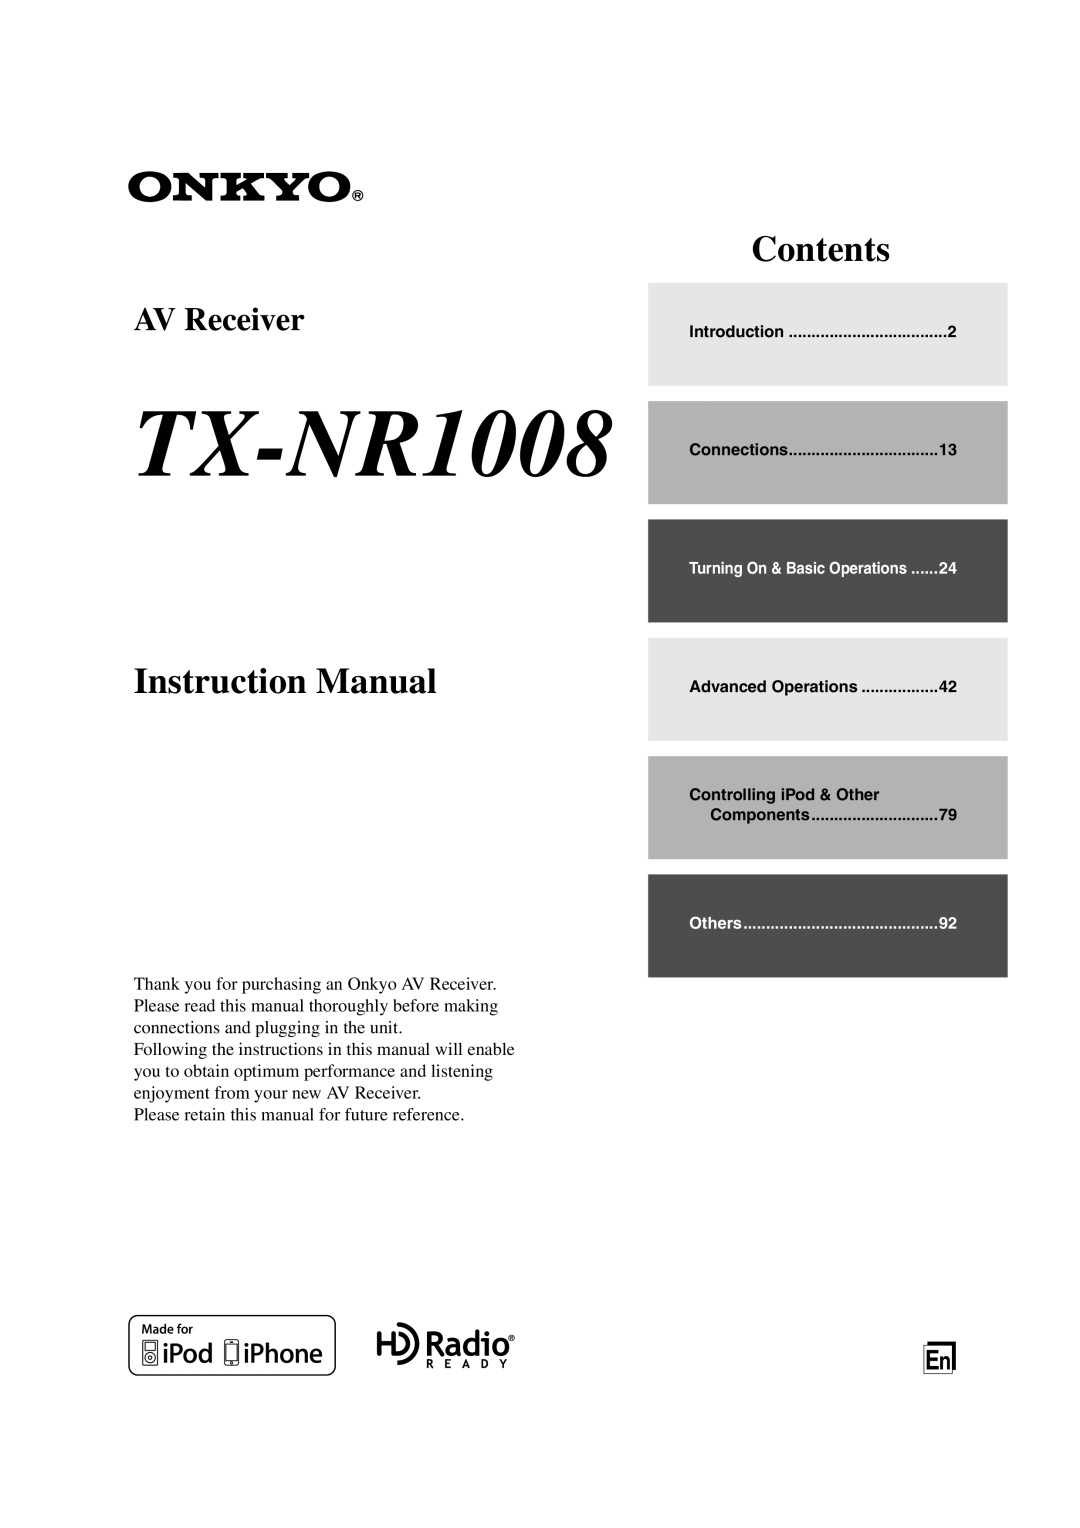 Onkyo TX-NR1008 instruction manual Contents, AV Receiver 